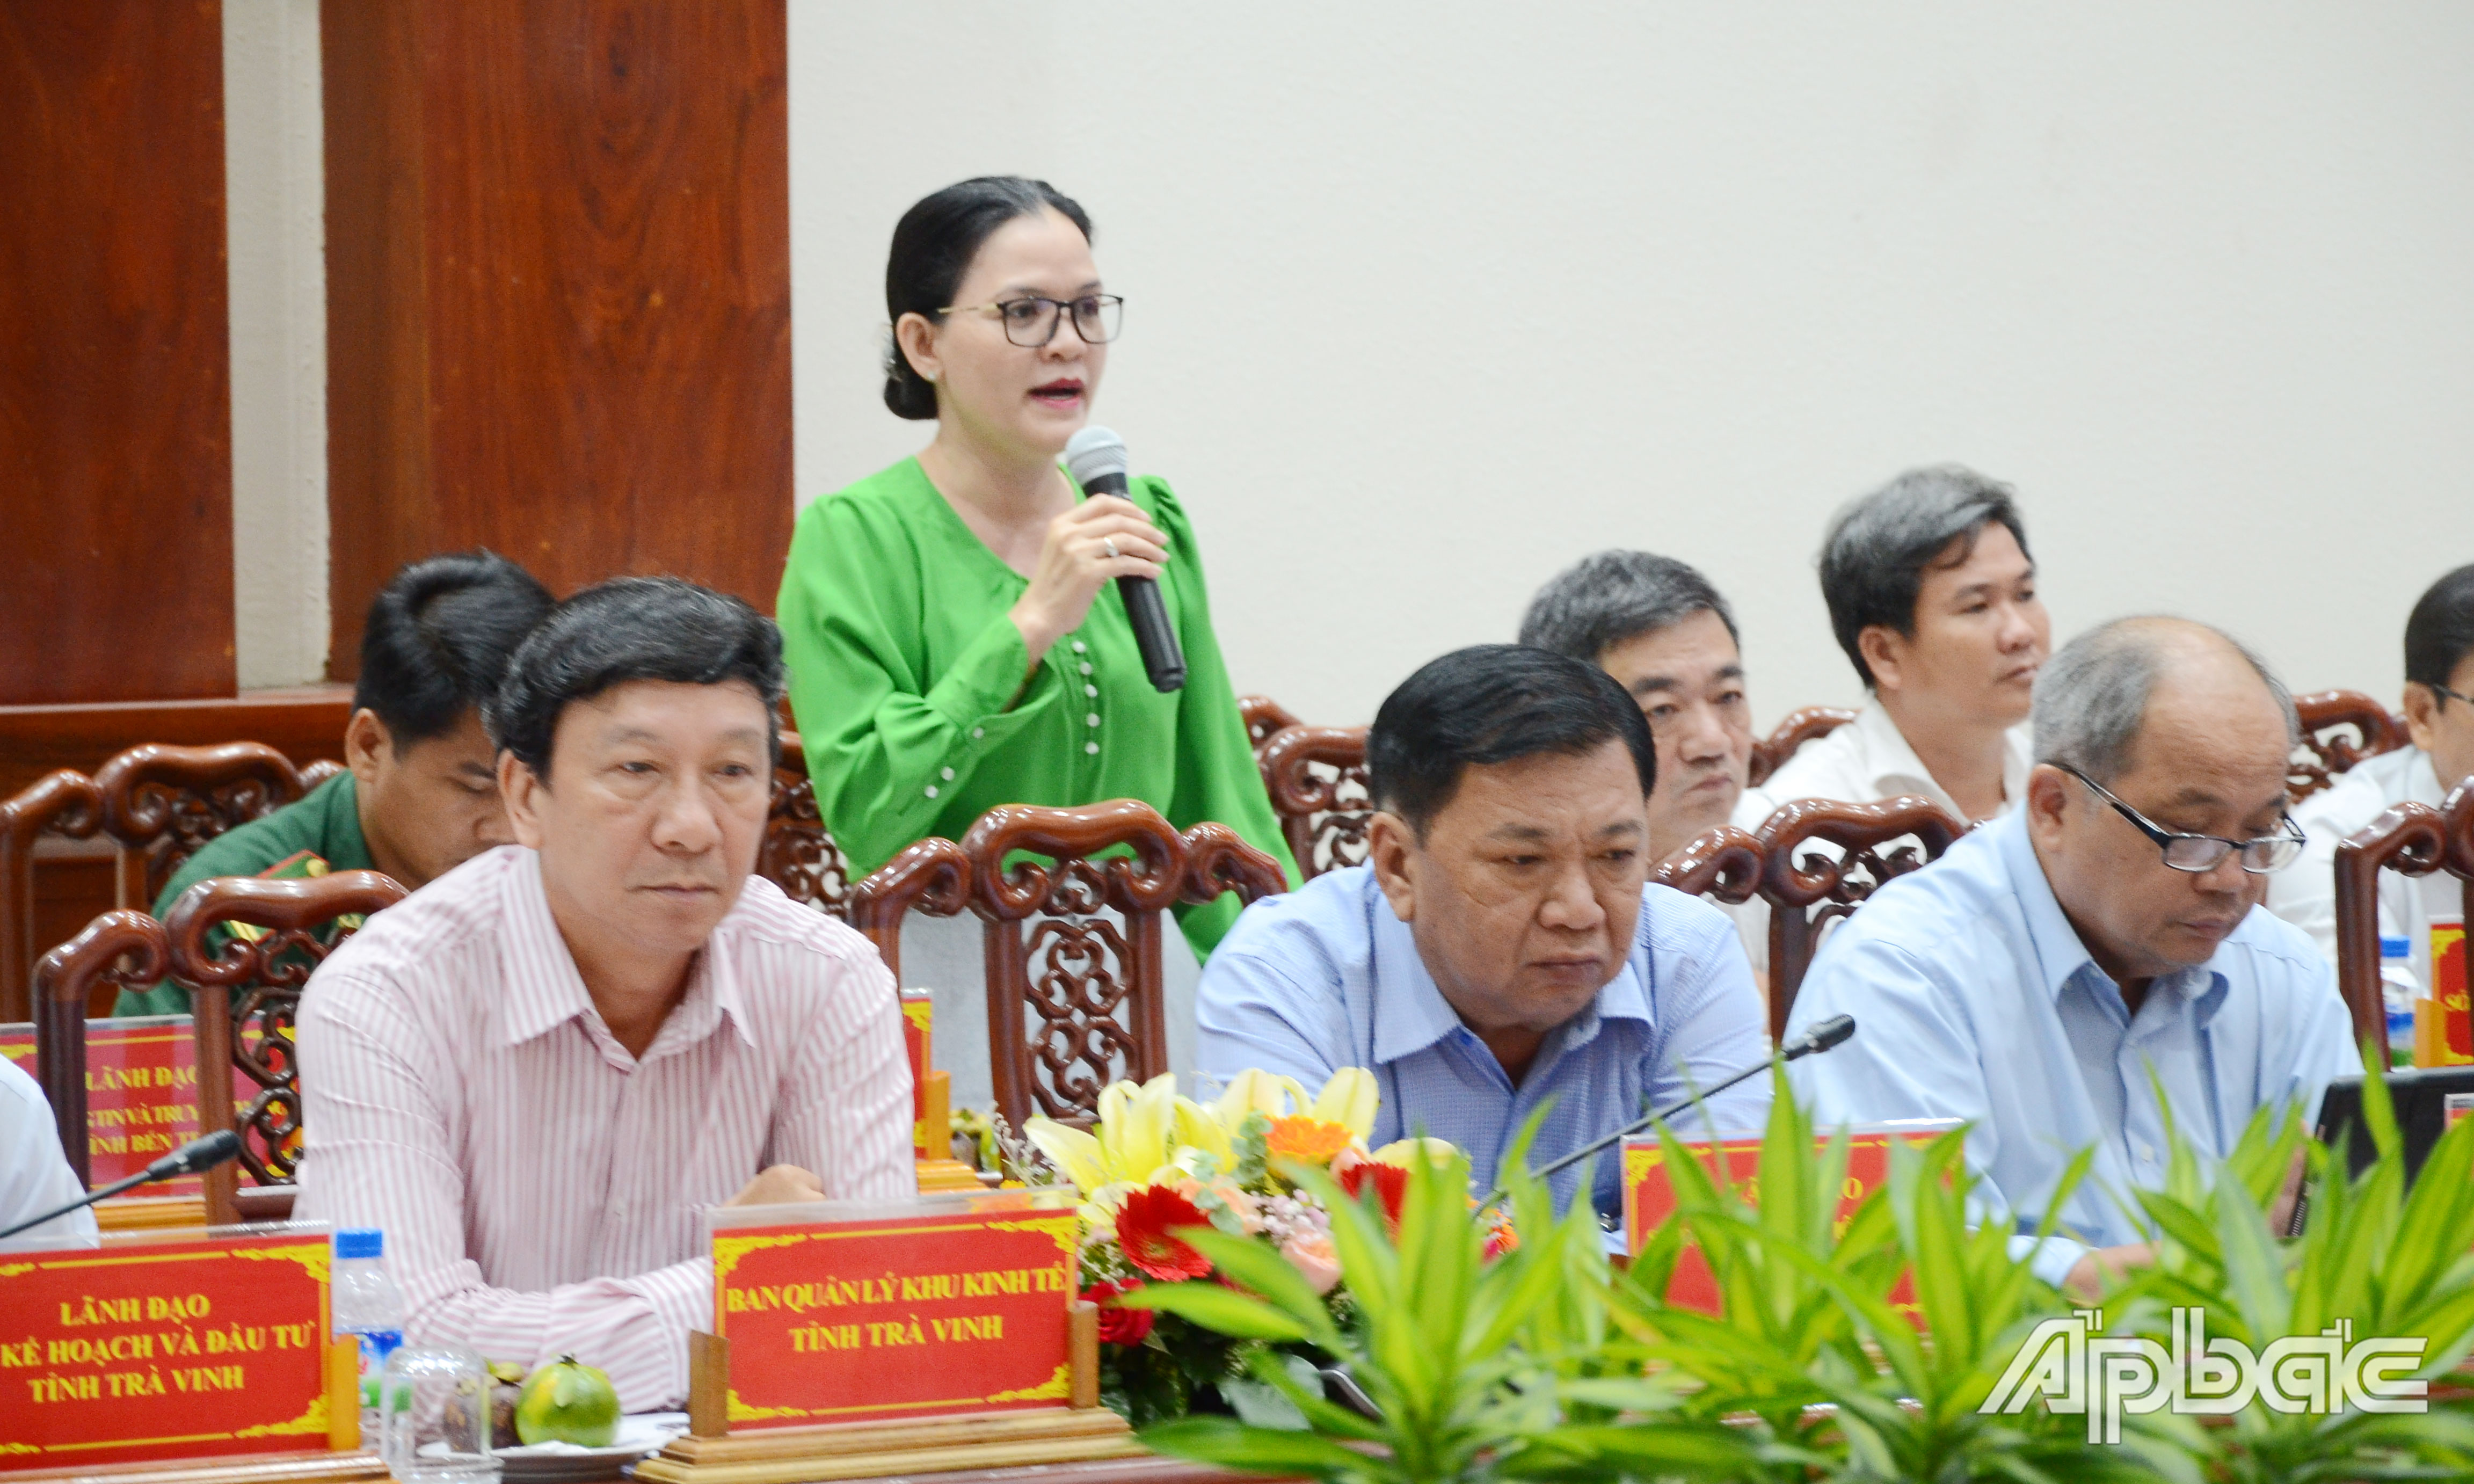 Lãnh đạo Sở Văn hóa - Thể thao và Du lịch tỉnh Bến Tre phát biểu về giải pháp liên kết phát triển du lịch.